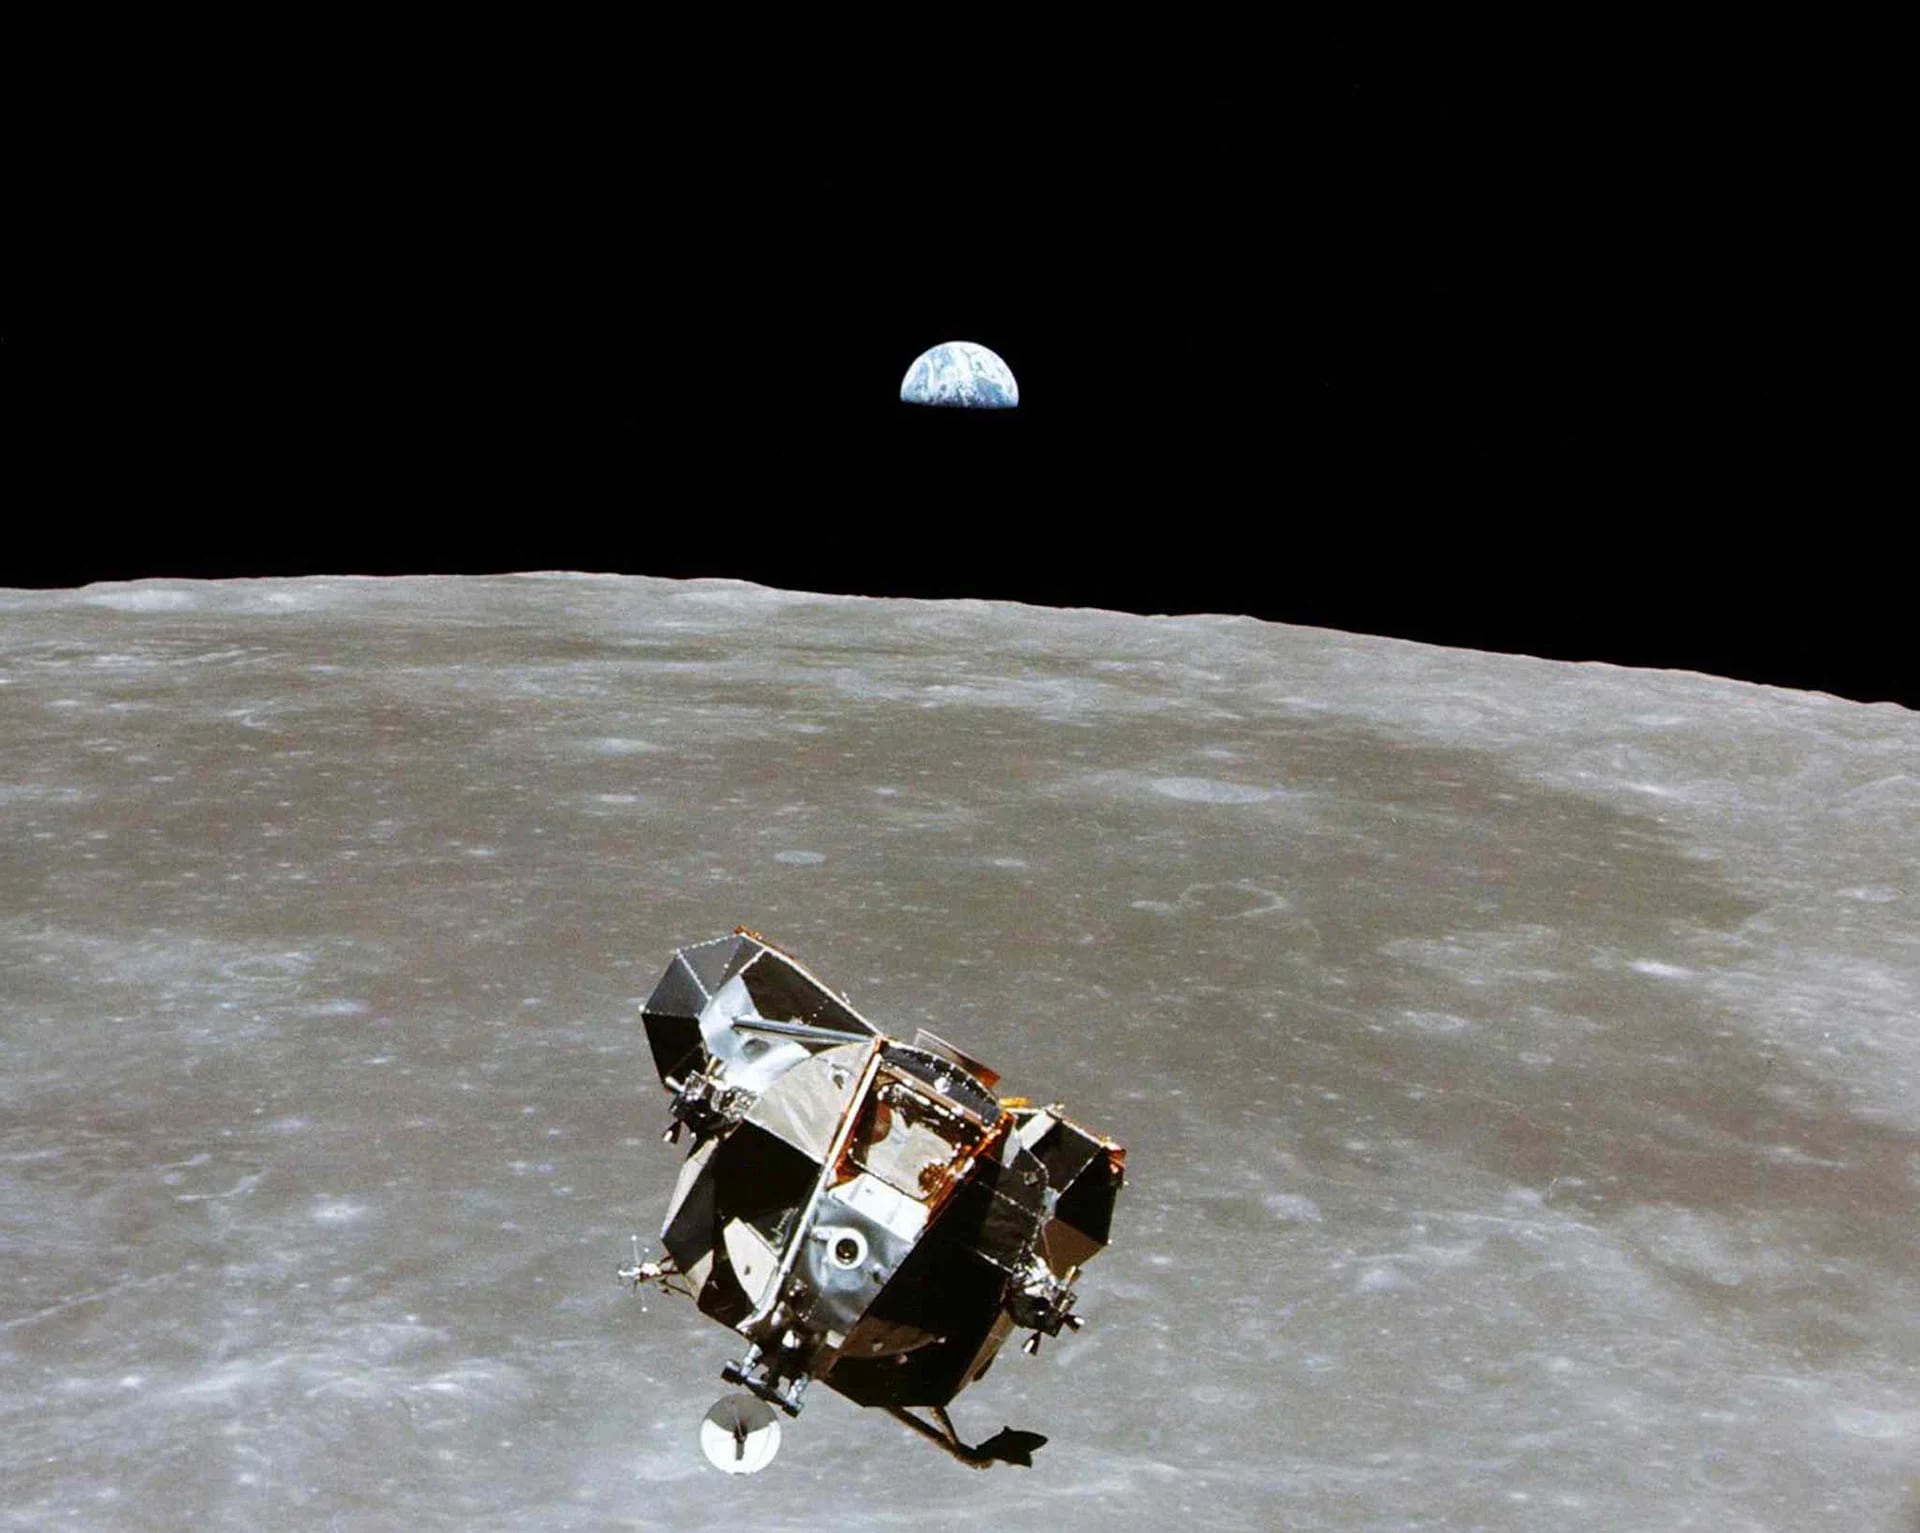 El módulo lunar con los astronautas Neil A. Armstrong y Edwin E. Aldrin Jr. a bordo, es fotografiado desde los módulos de comando y de servicio en órbita lunar, en julio de 1969. El astronauta Michael Collins, piloto del módulo de comando se quedó en orbita mientras sus compañeros exploraban la luna (Reuters)